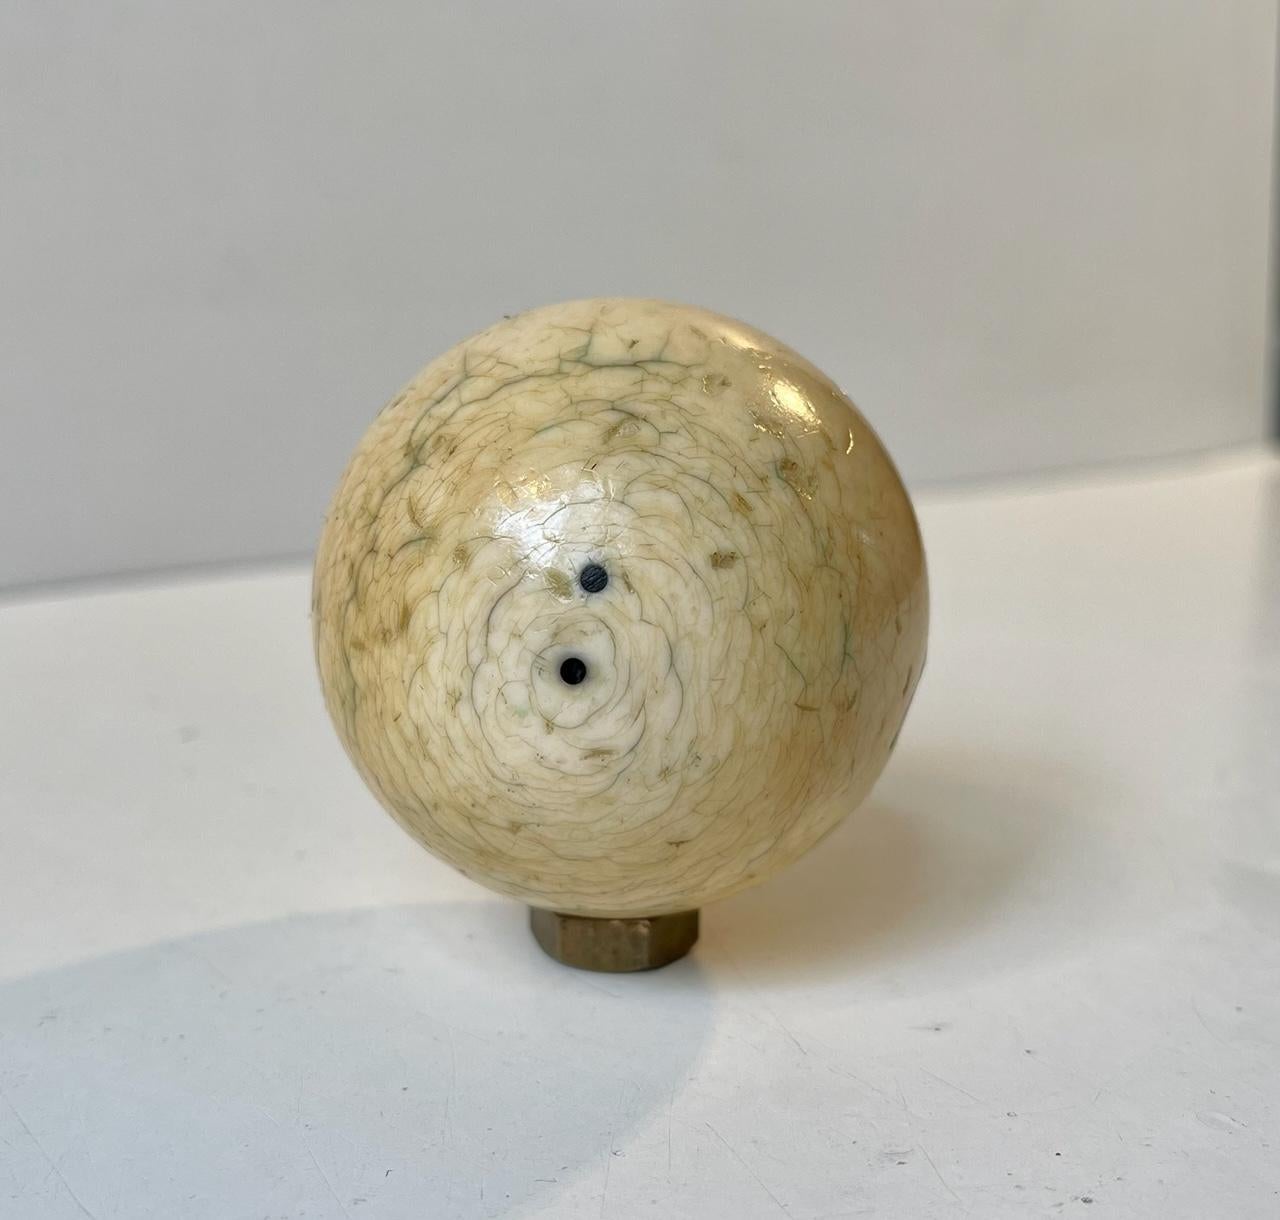 Die jetzt als dekorative Zahnkugel dienende Kugel war ursprünglich ein Objekt, das für das vor 1730 in Frankreich erfundene Billardspiel bestimmt war. Dieser besondere Spielball stammt aus der Zeit um 1900. Die zitierten Vorschriften gelten nicht